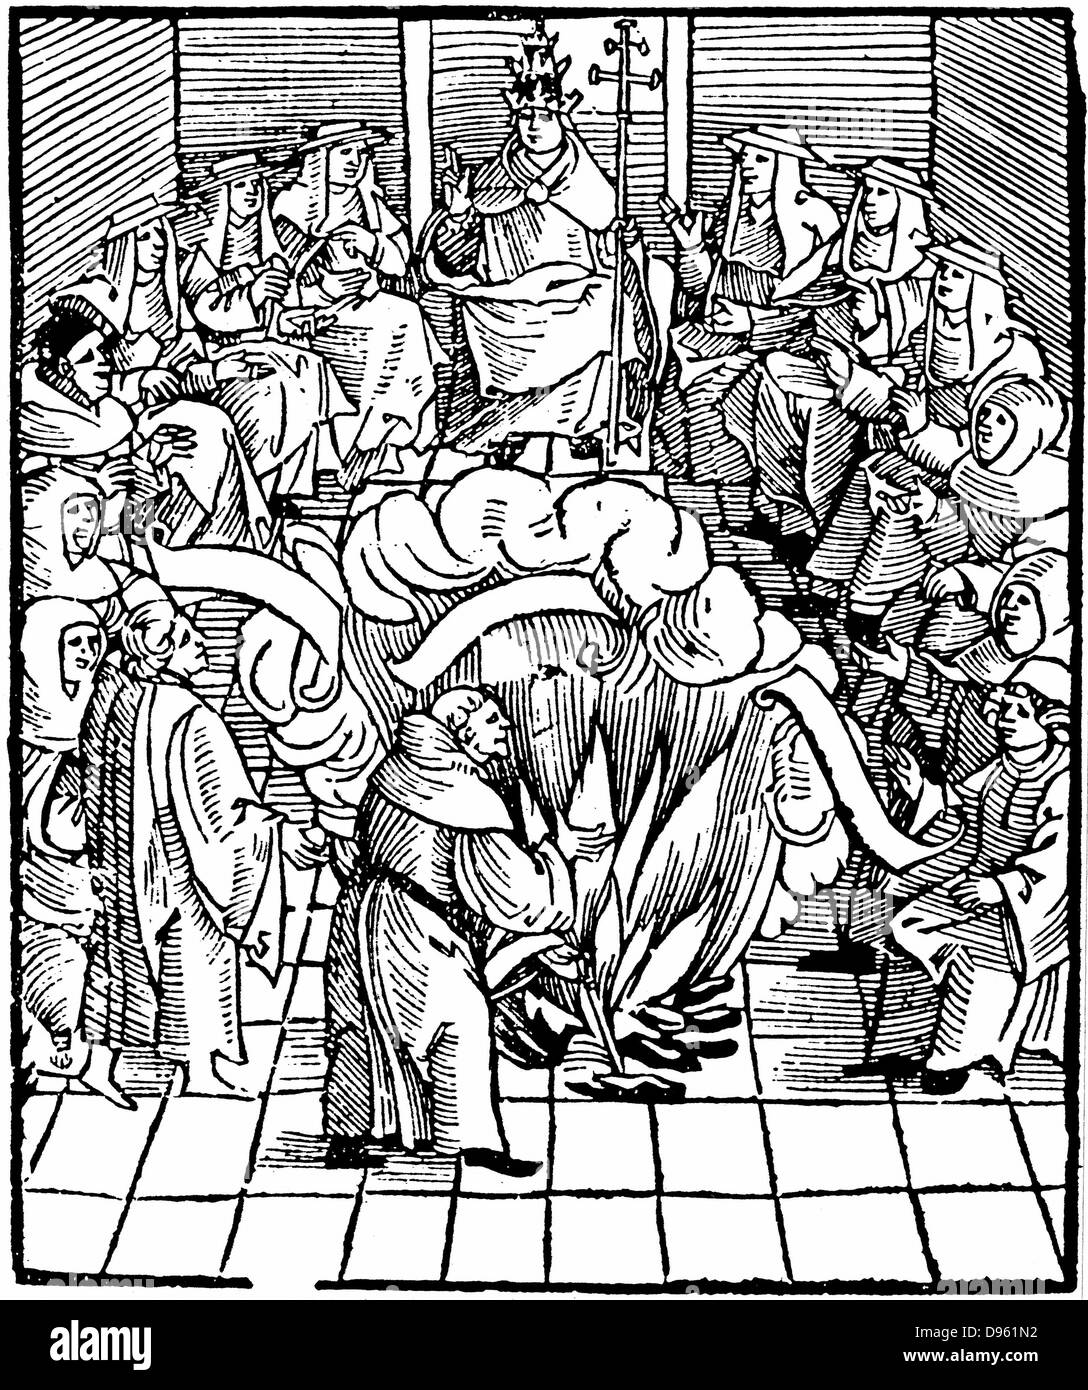 Papst Leo X (Giovanni De' Medici 1475-1521, Papst von 1513) die Kontrolle der Verbrennung von Martin Luthers Bücher nach dem ersten Reichstag zu Worms, 1521. Holzschnitt. Stockfoto